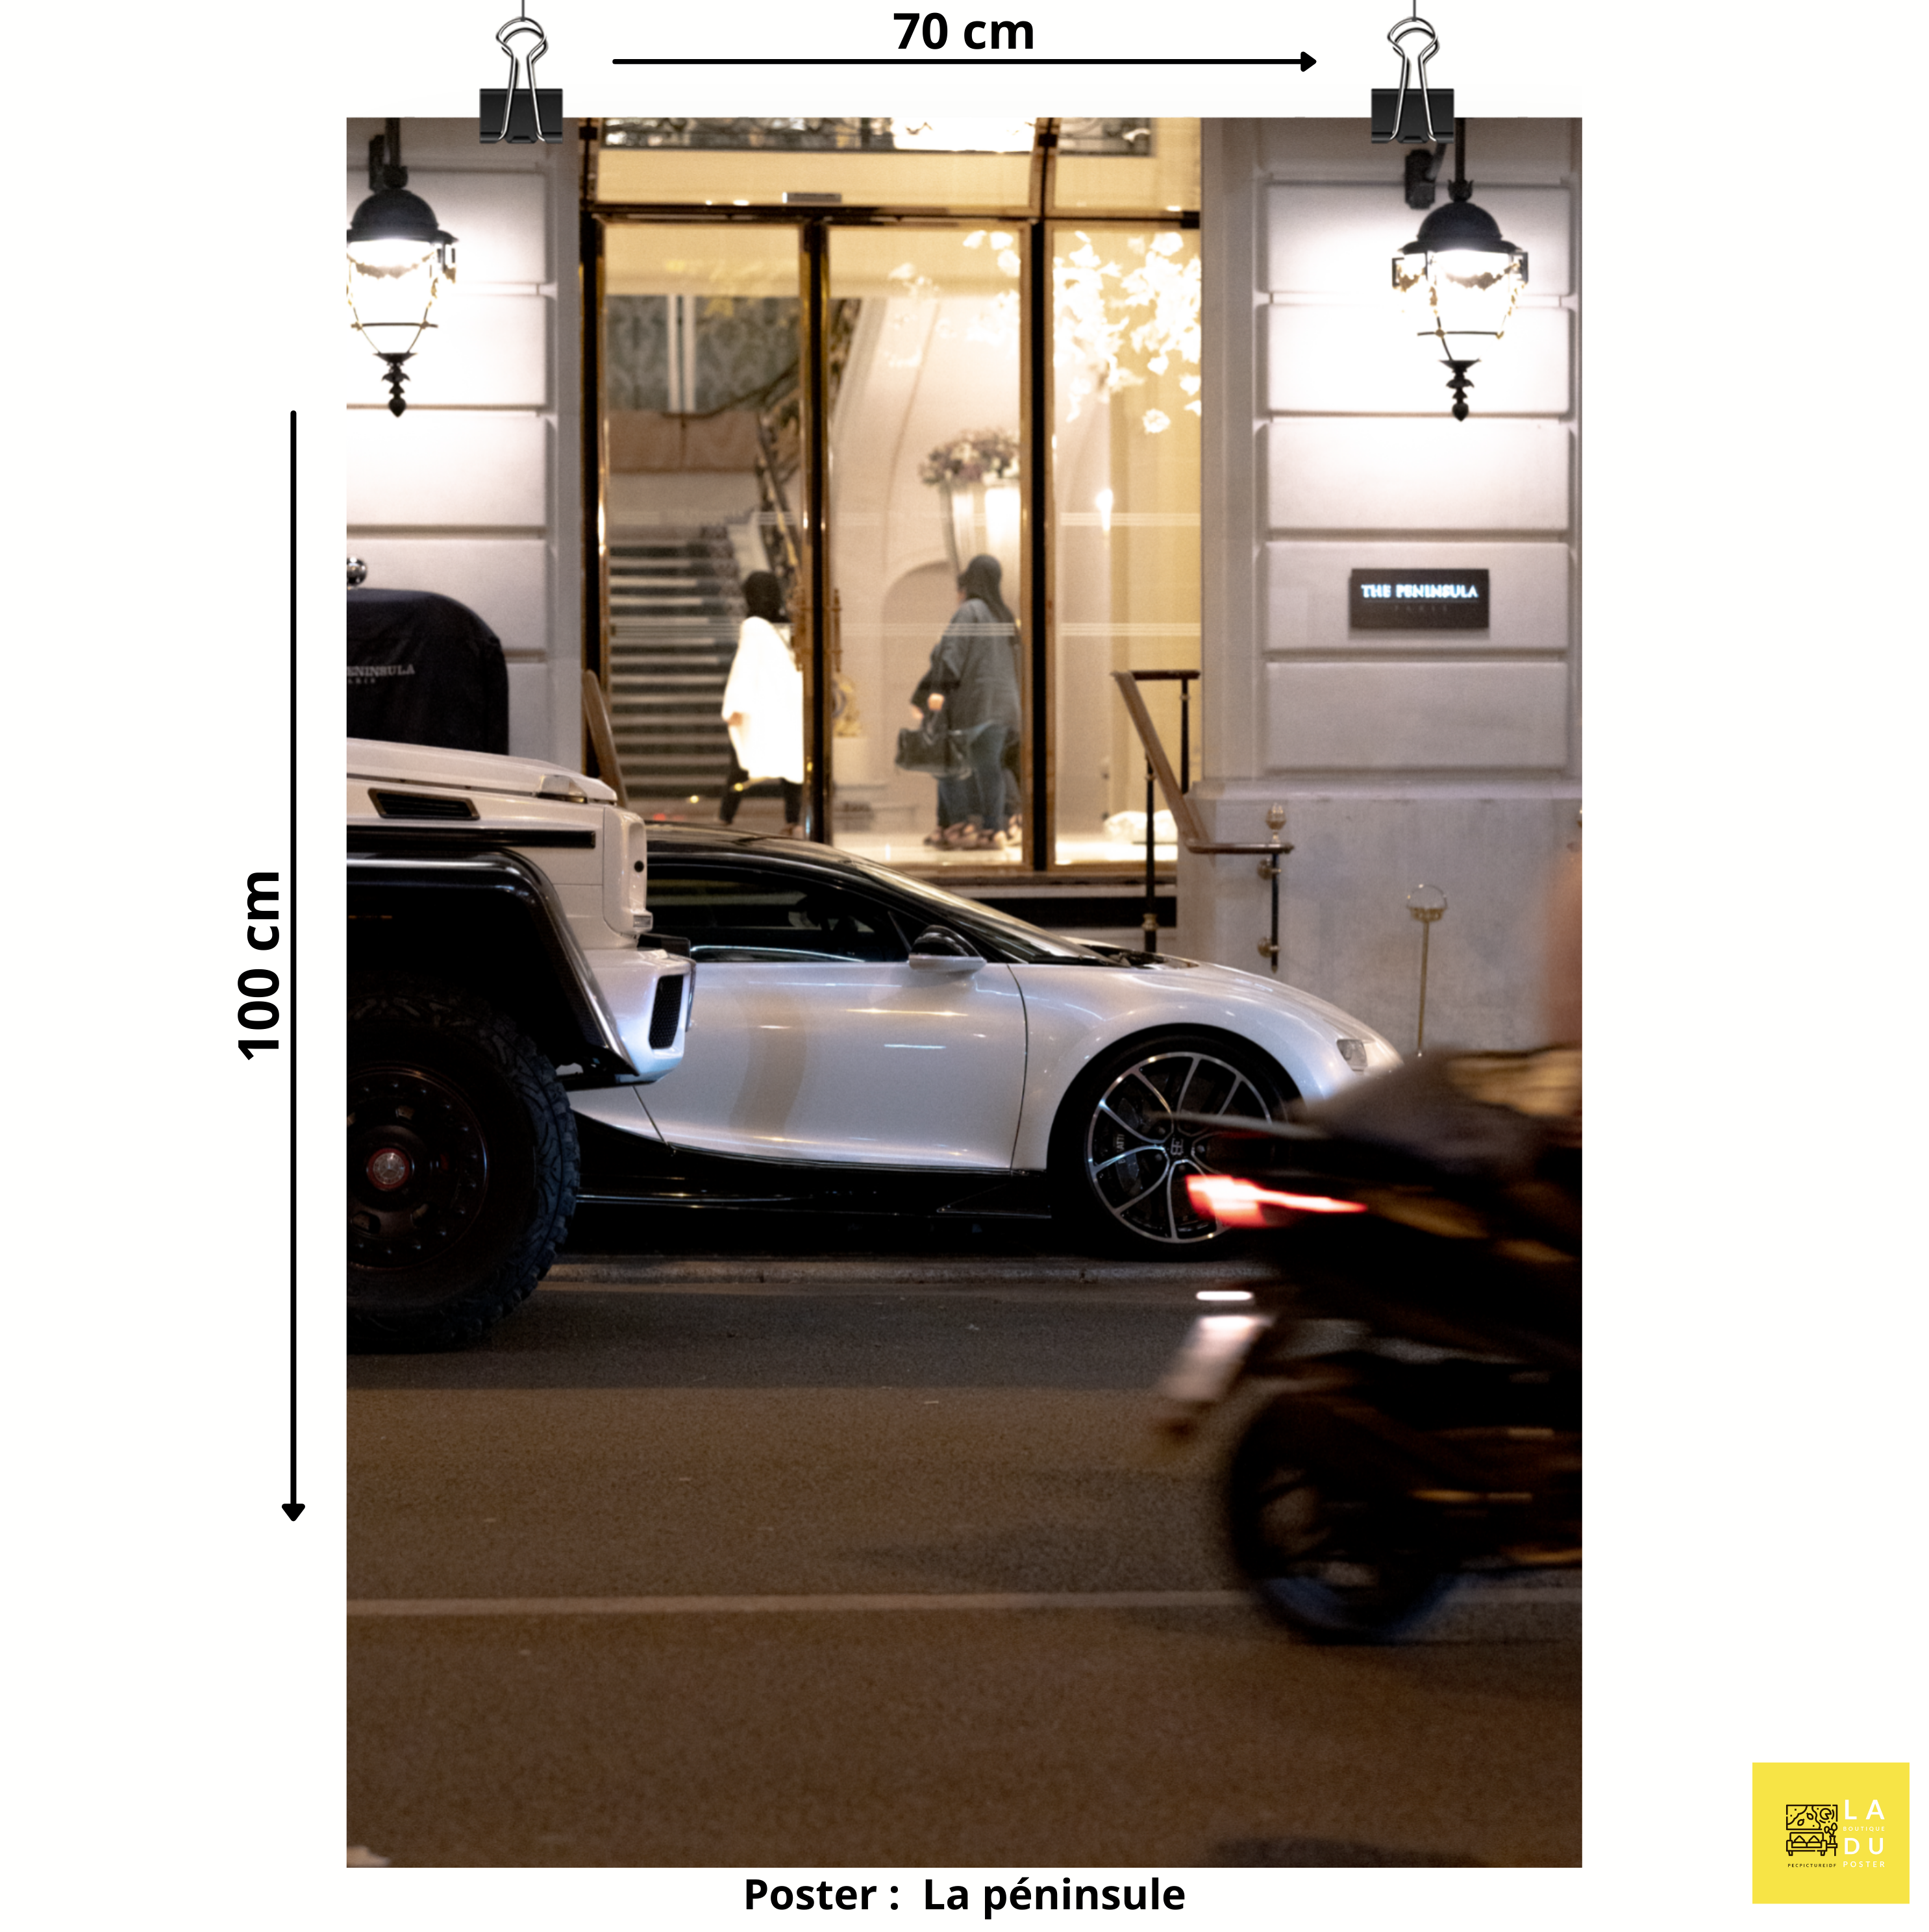 Poster mural - Bugatti Chiron – Photographie de voiture – Poster photo, poster XXL, Photo d’art, photographie murale et des posters muraux des photographies de rue unique au monde. La boutique de posters créée par un Photographe français.